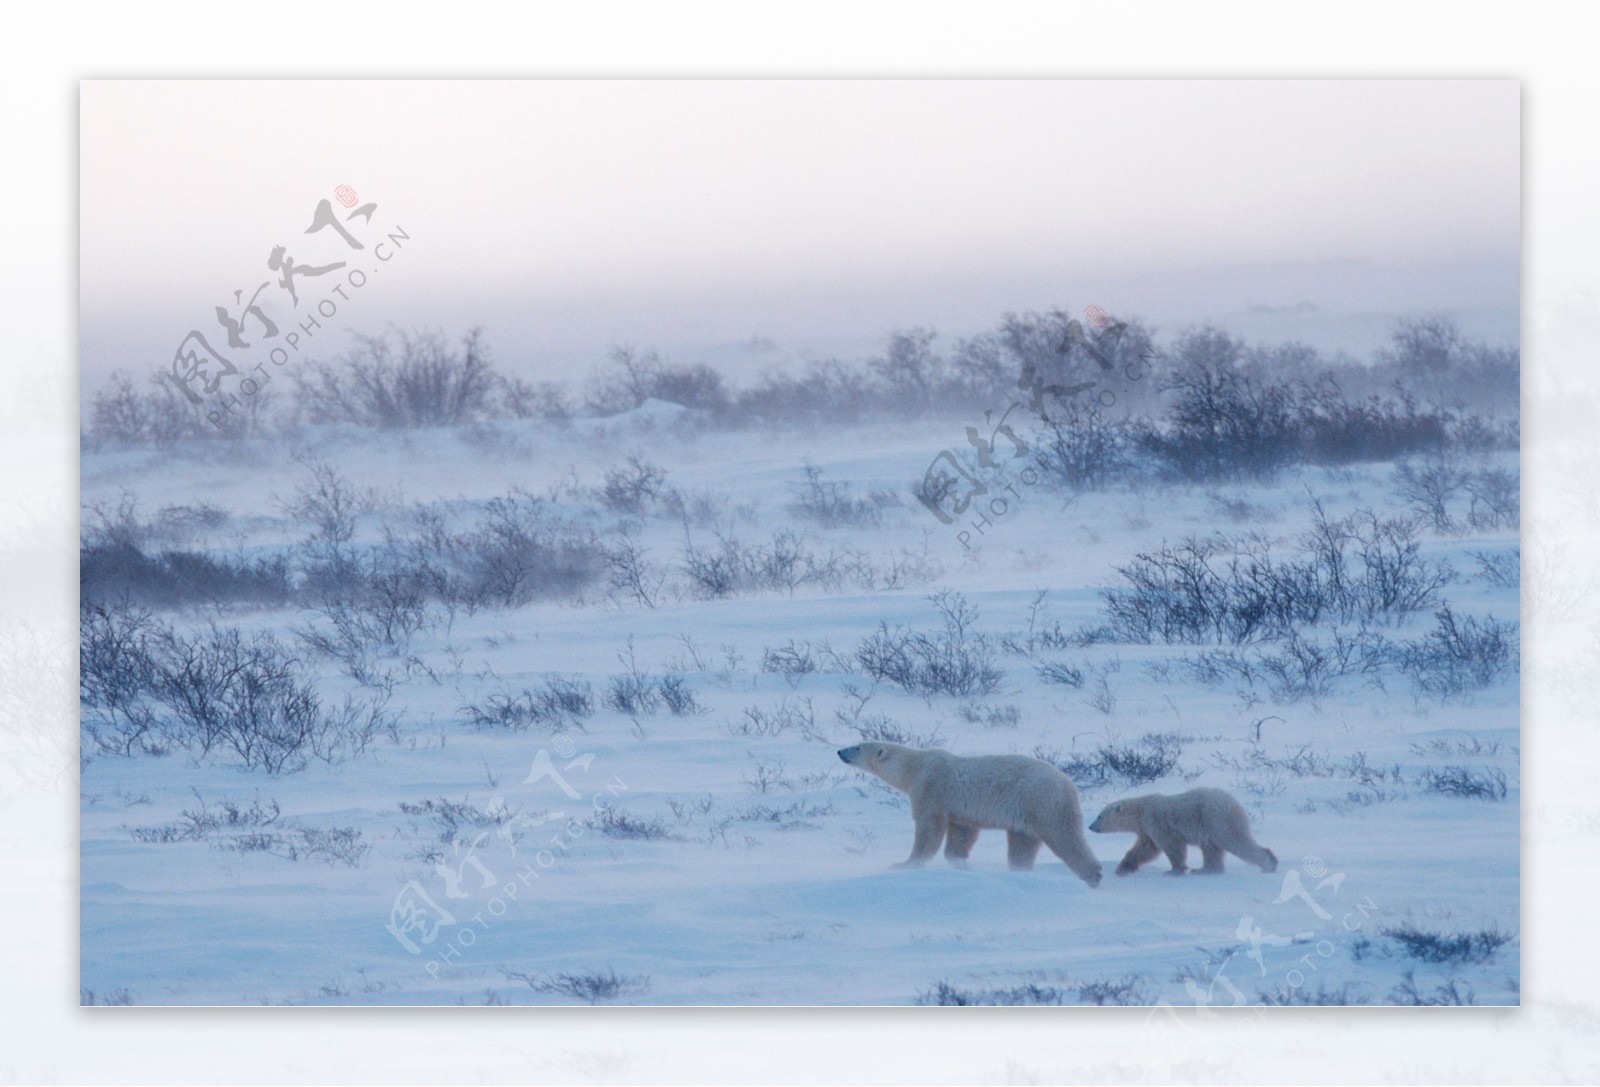 雪地上的两只北极熊图片